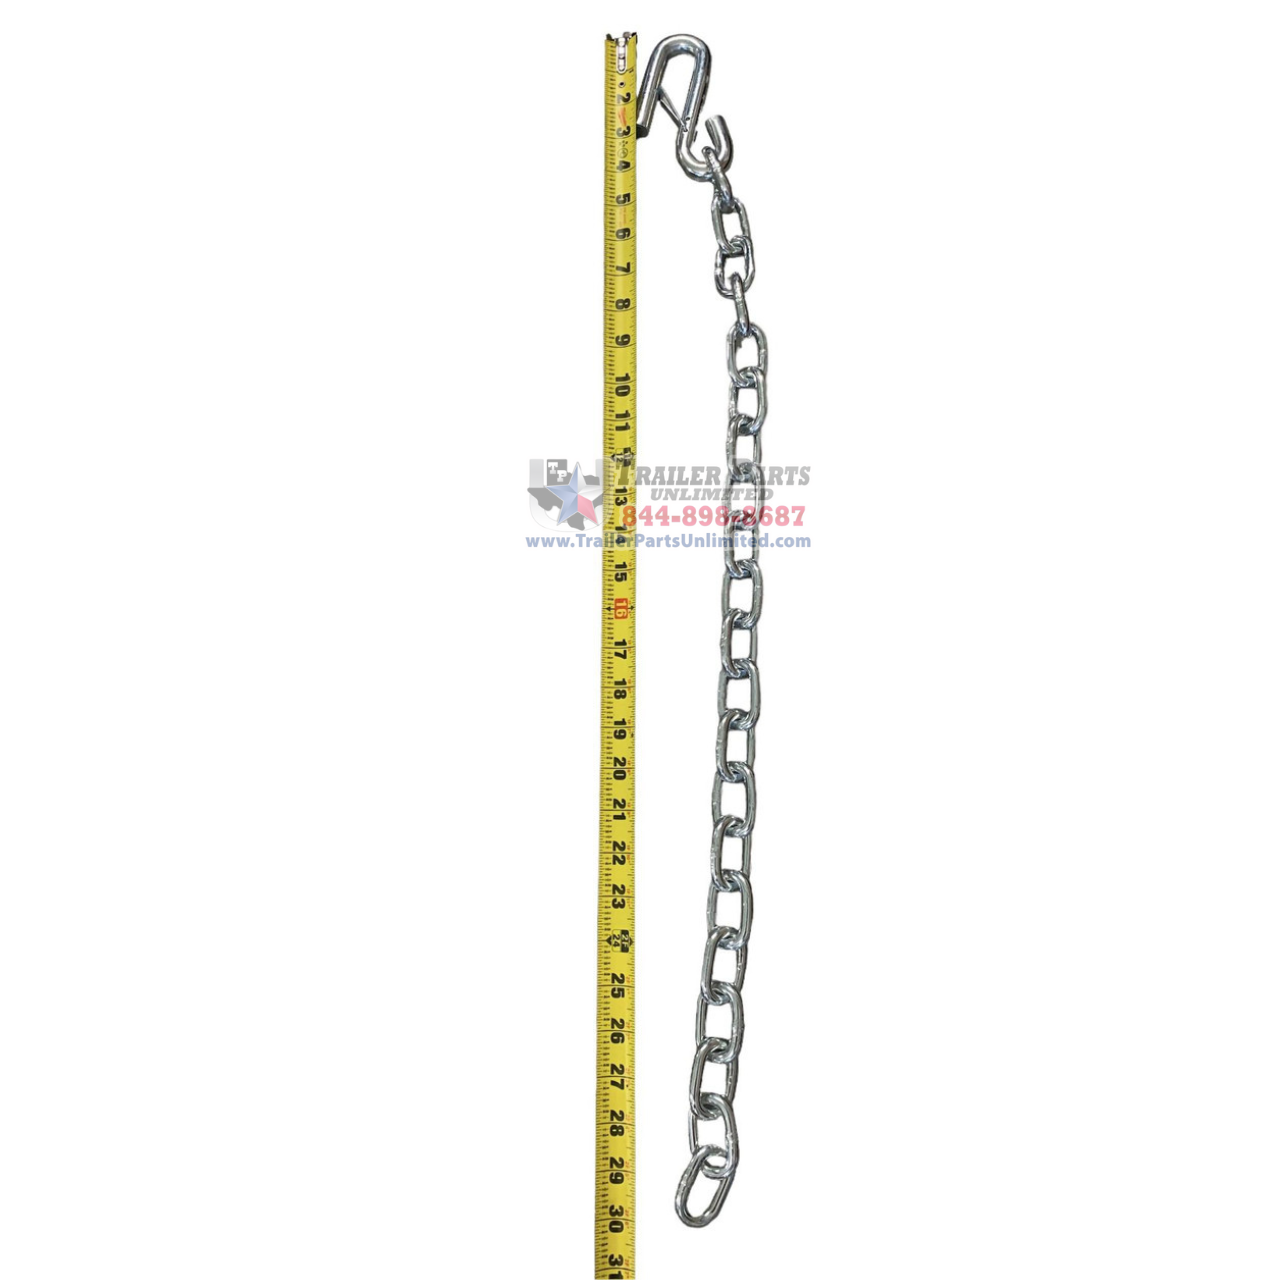 30 x 5/16 Trailer Safety Chain w/ 1 Safety Latch Hook G30 7.6k Cap.